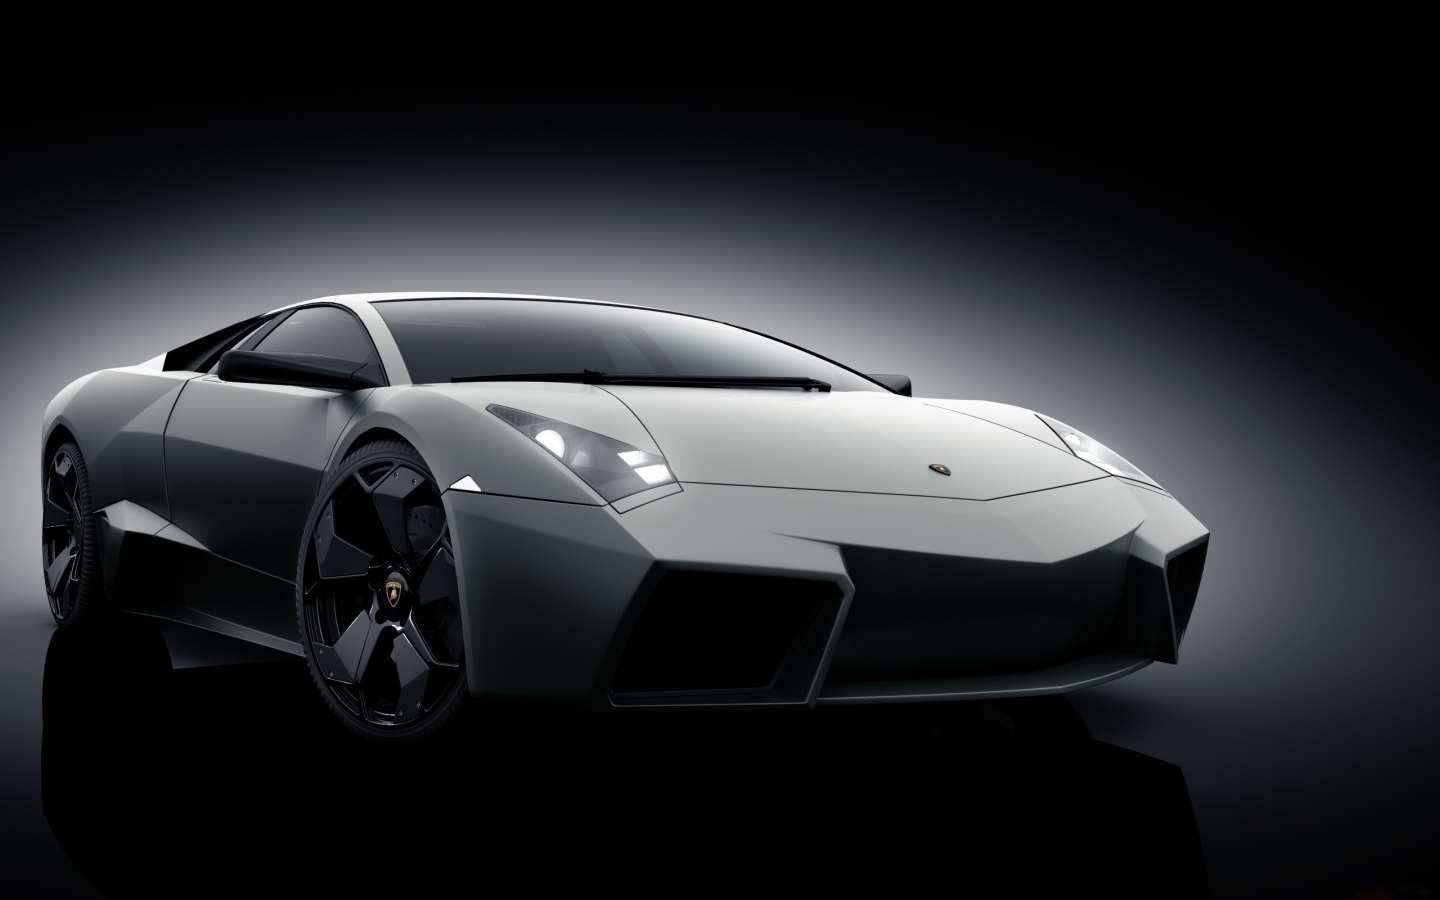 Grey Lamborghini Reventon for 1440 x 900 widescreen resolution